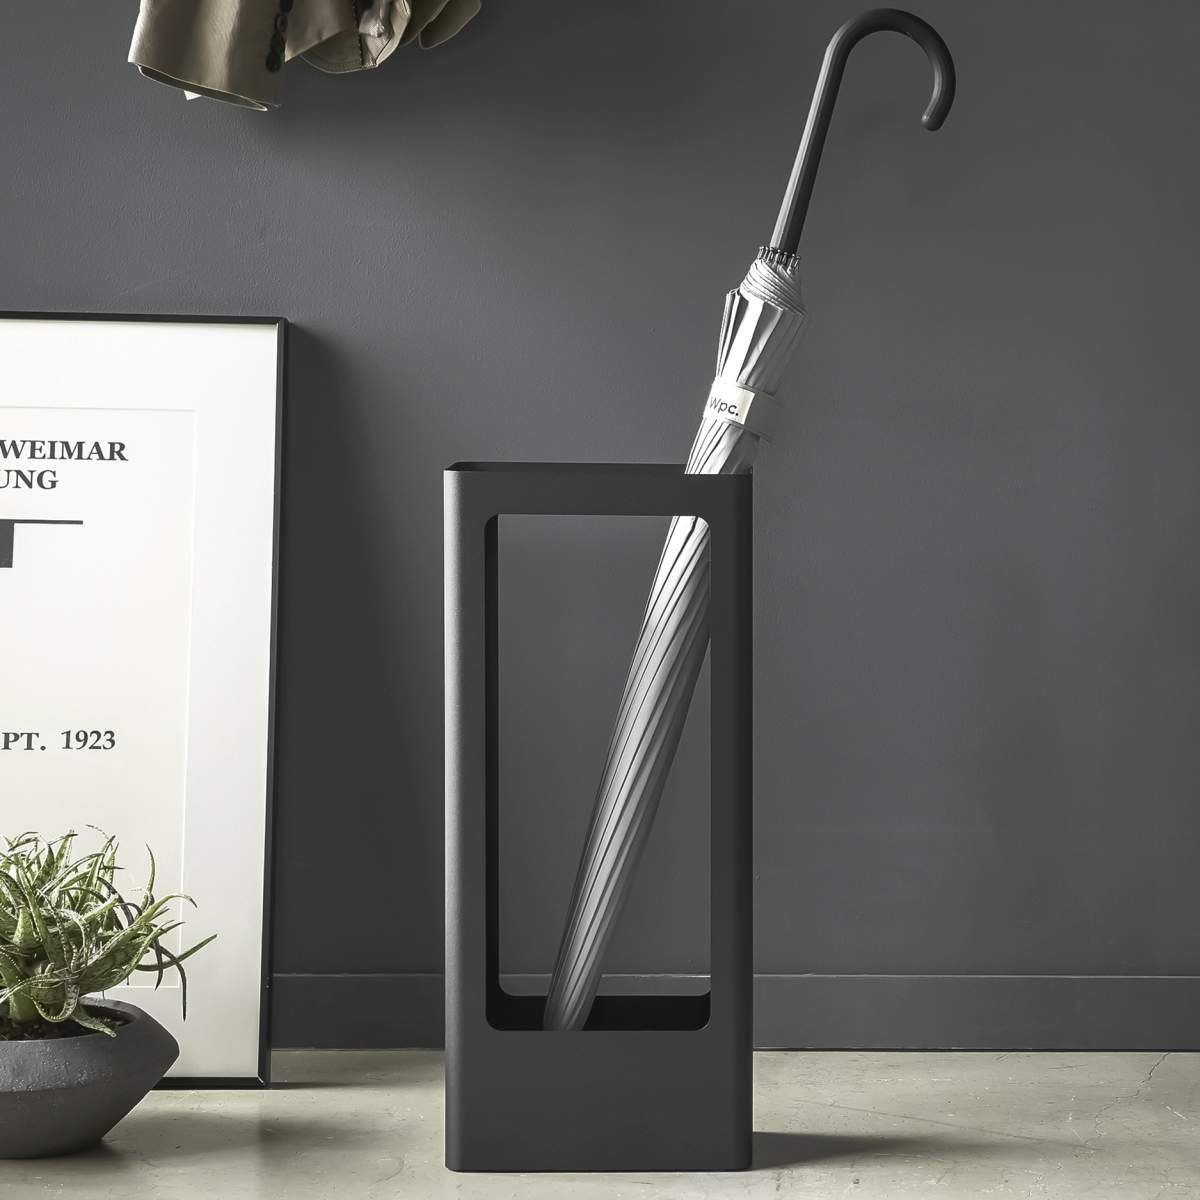 Yamazaki Schirmständer »Tower«, Regenschirmständer, aus Metall,  freistehend, modern, schwarz, schlichter skandinavischer Stil online kaufen  | OTTO